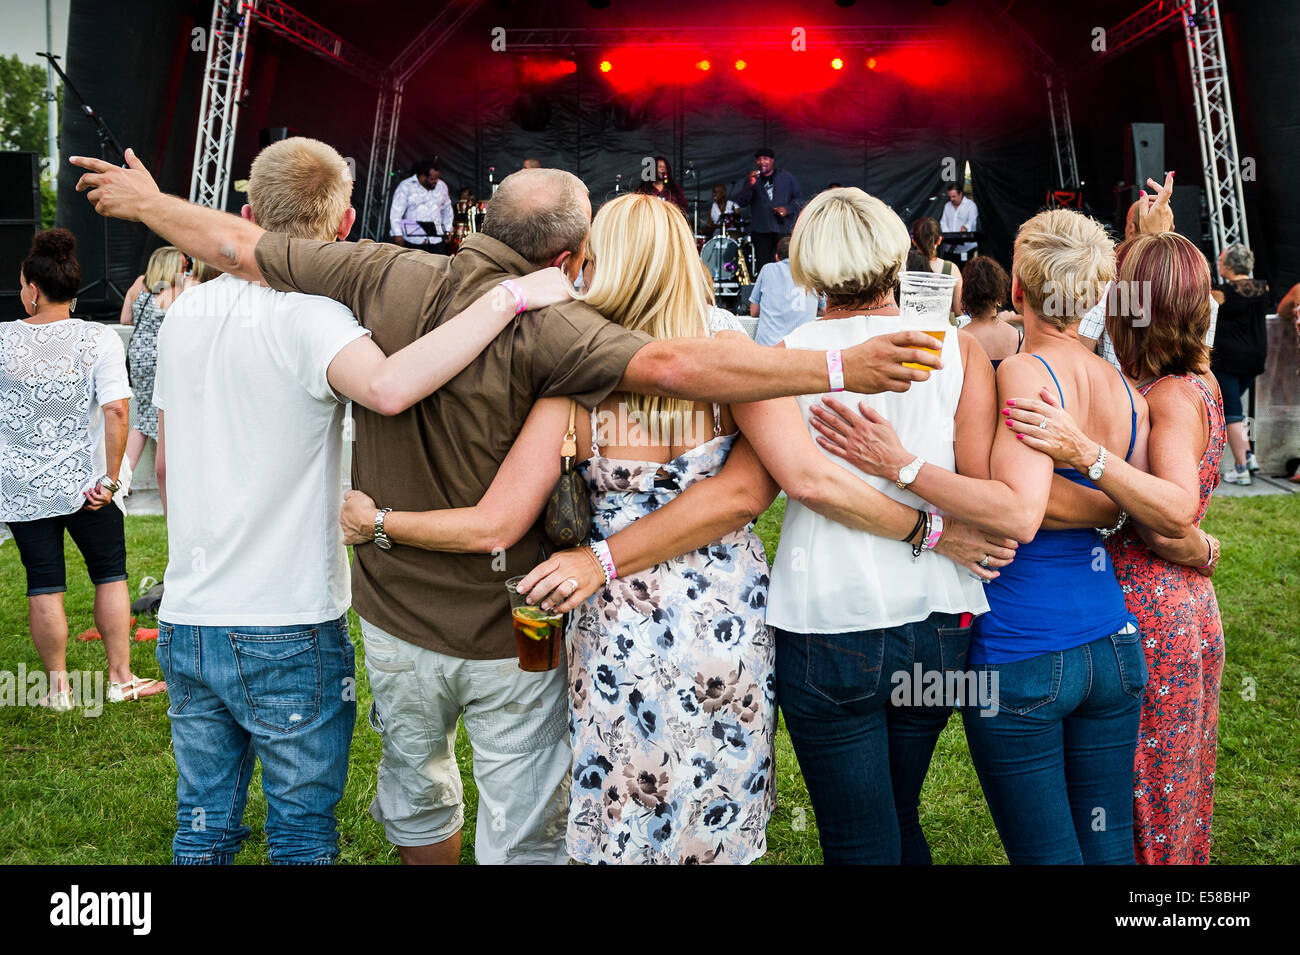 Festivalgoers divertirsi presso il Festival di Brentwood. Foto Stock